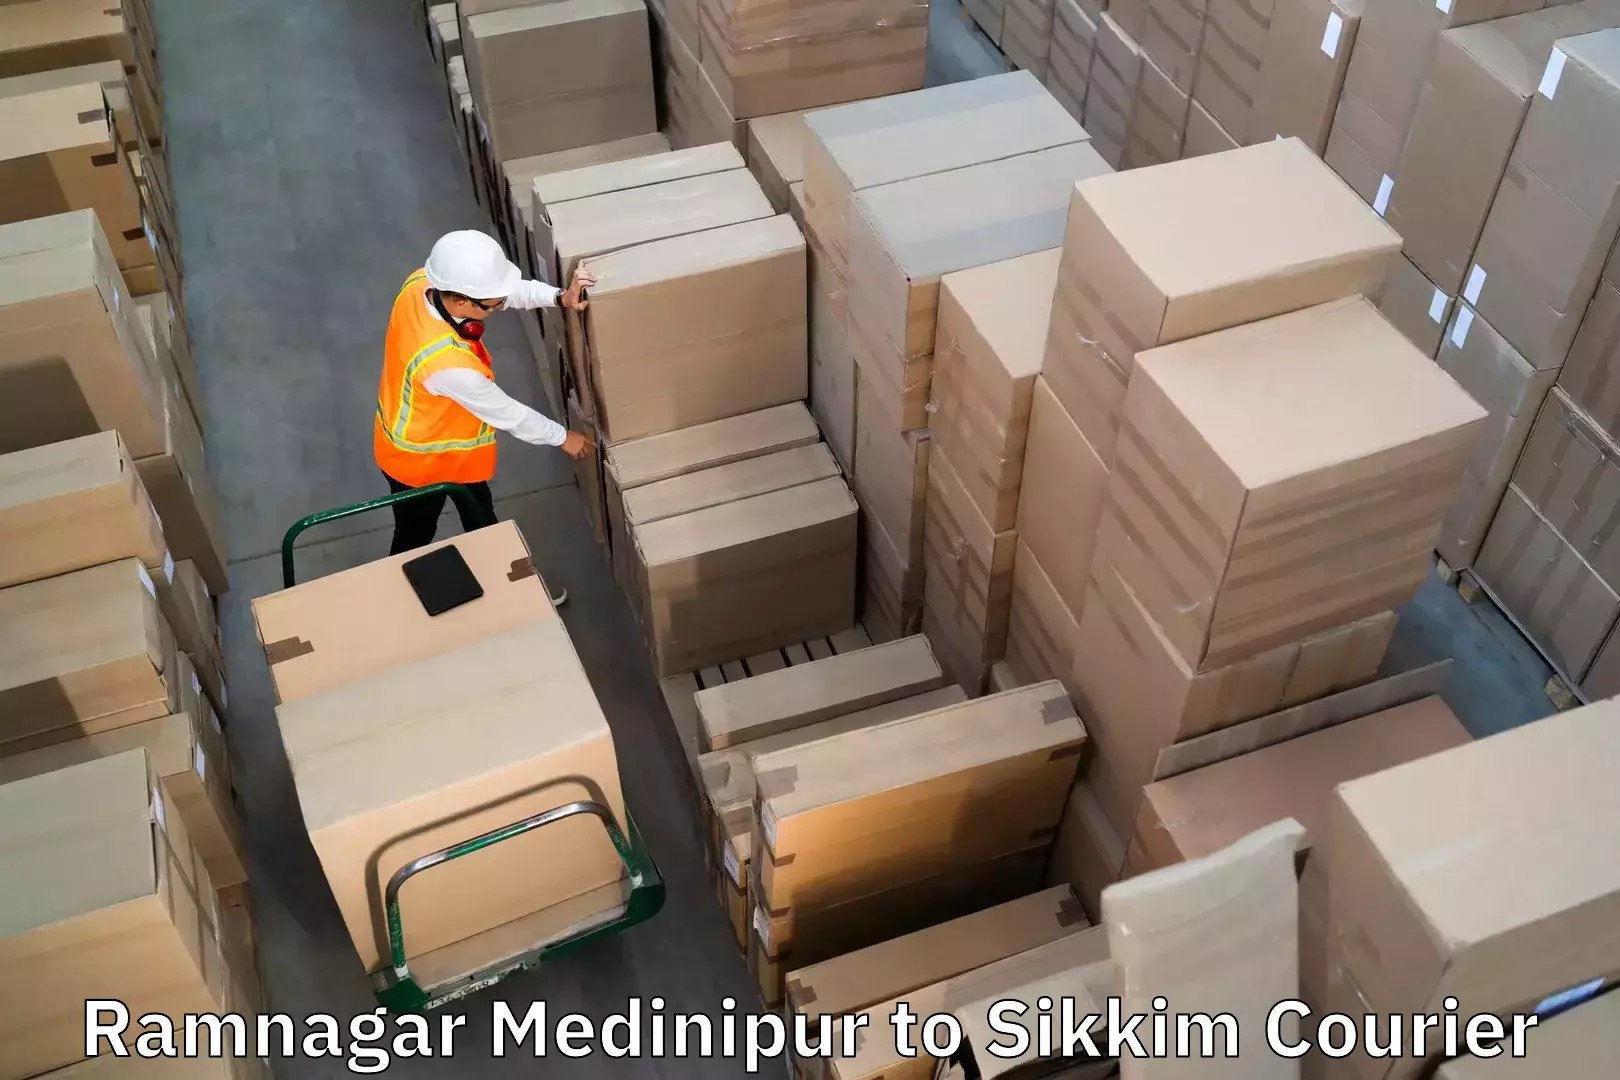 Baggage transport management in Ramnagar Medinipur to Mangan